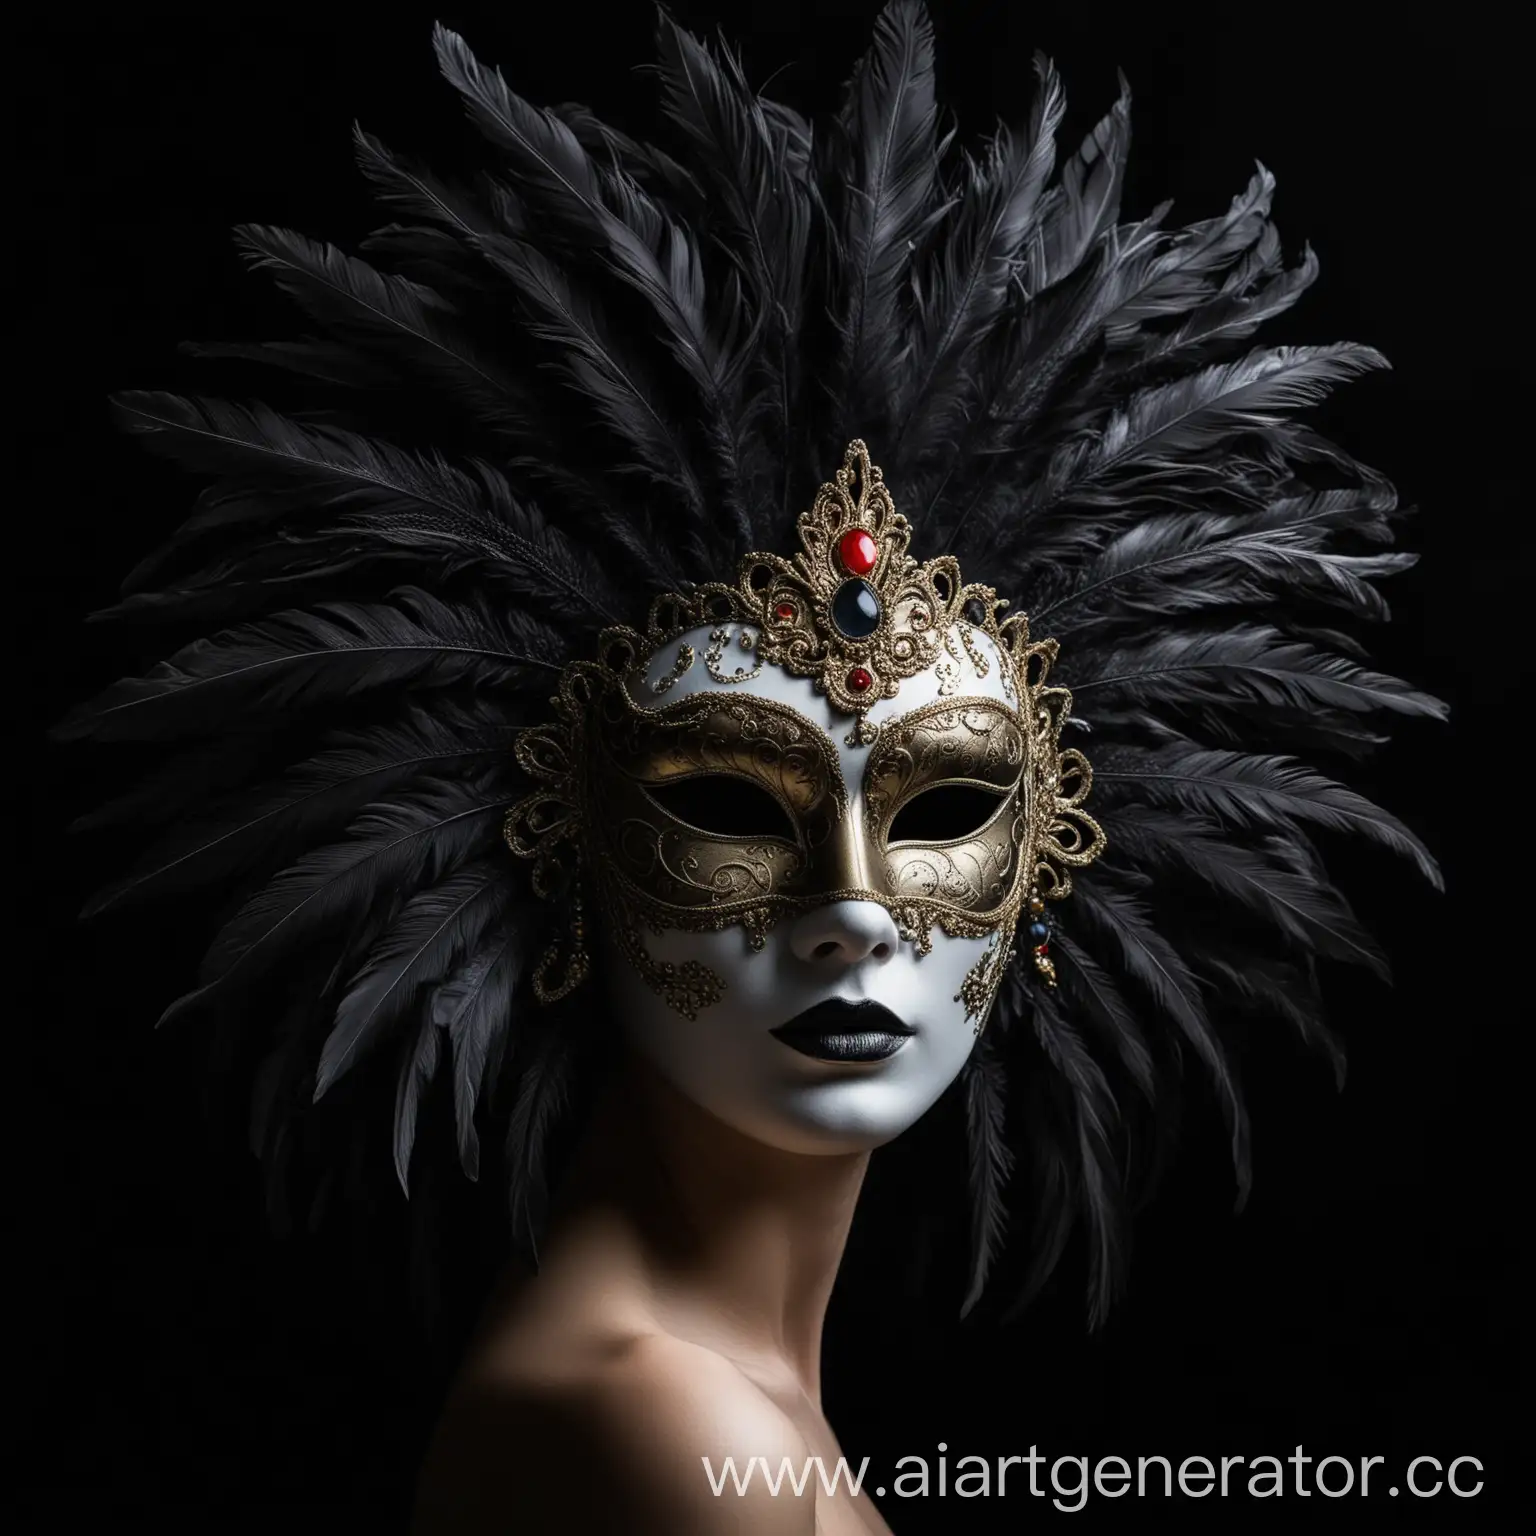 венецианская маска в перьями, черный фон, в профиль
